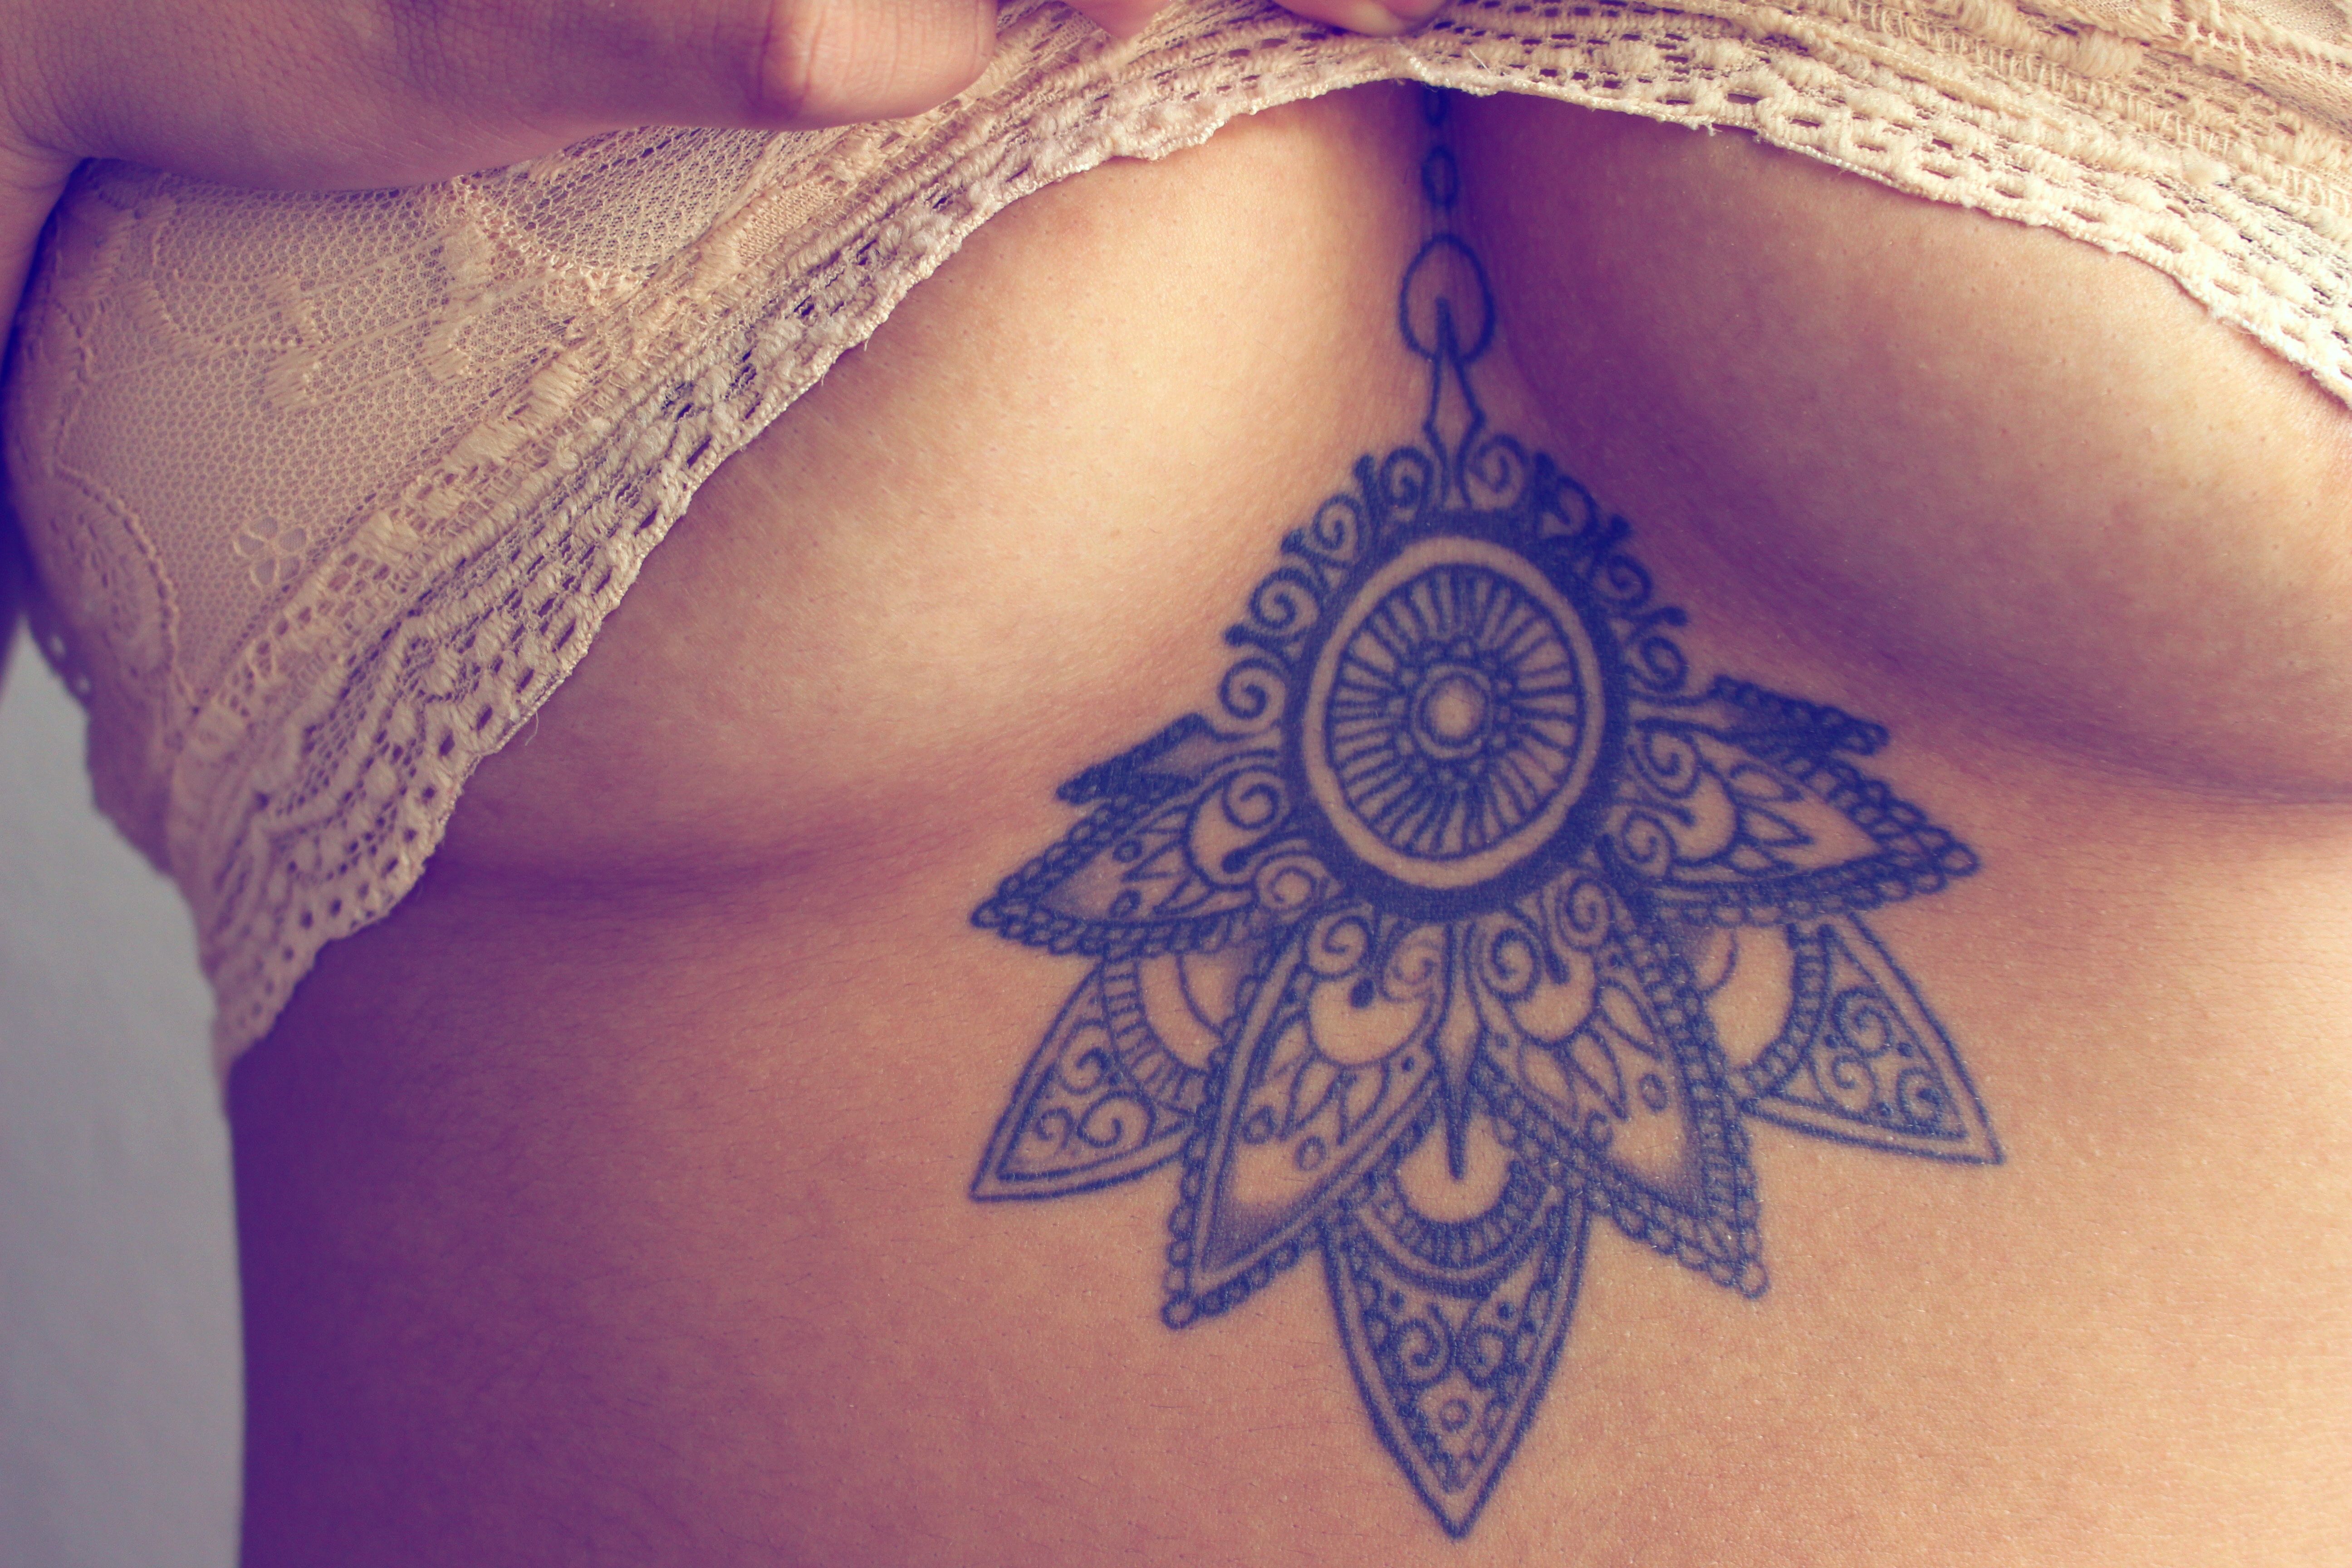 Jennifer Cordero  Professional tattoo artist  Stuck on You tattoos   LinkedIn